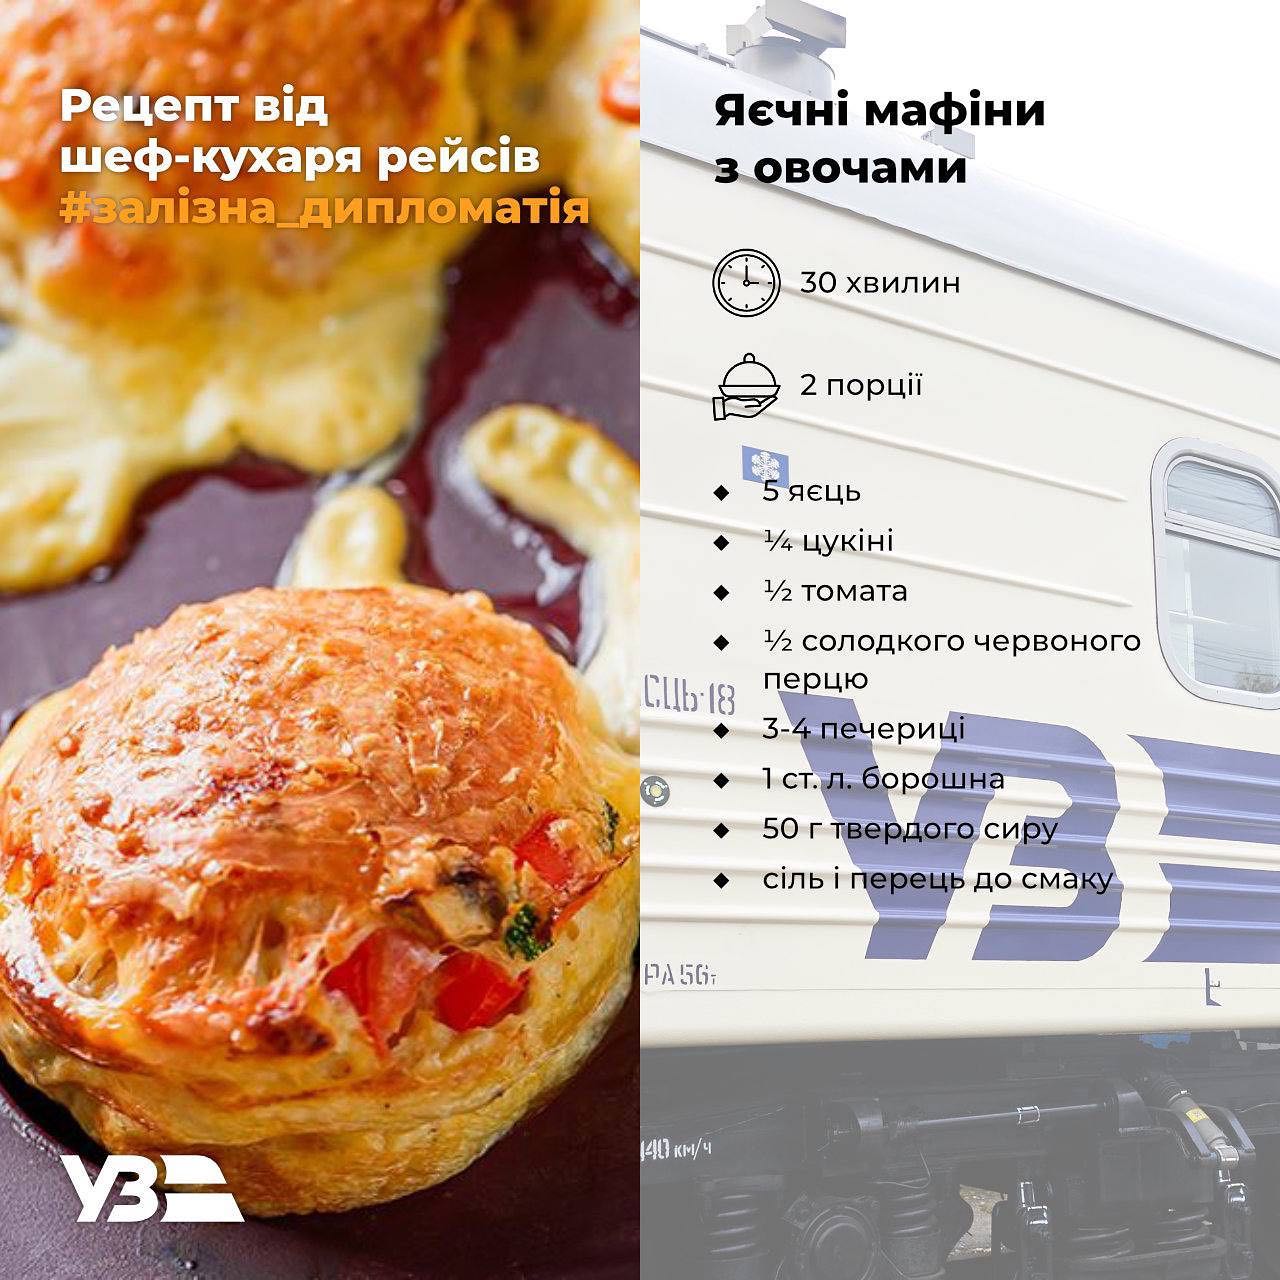 Что съесть в поезде: три простых рецепта перекусов в дорогу от Евгения Клопотенко